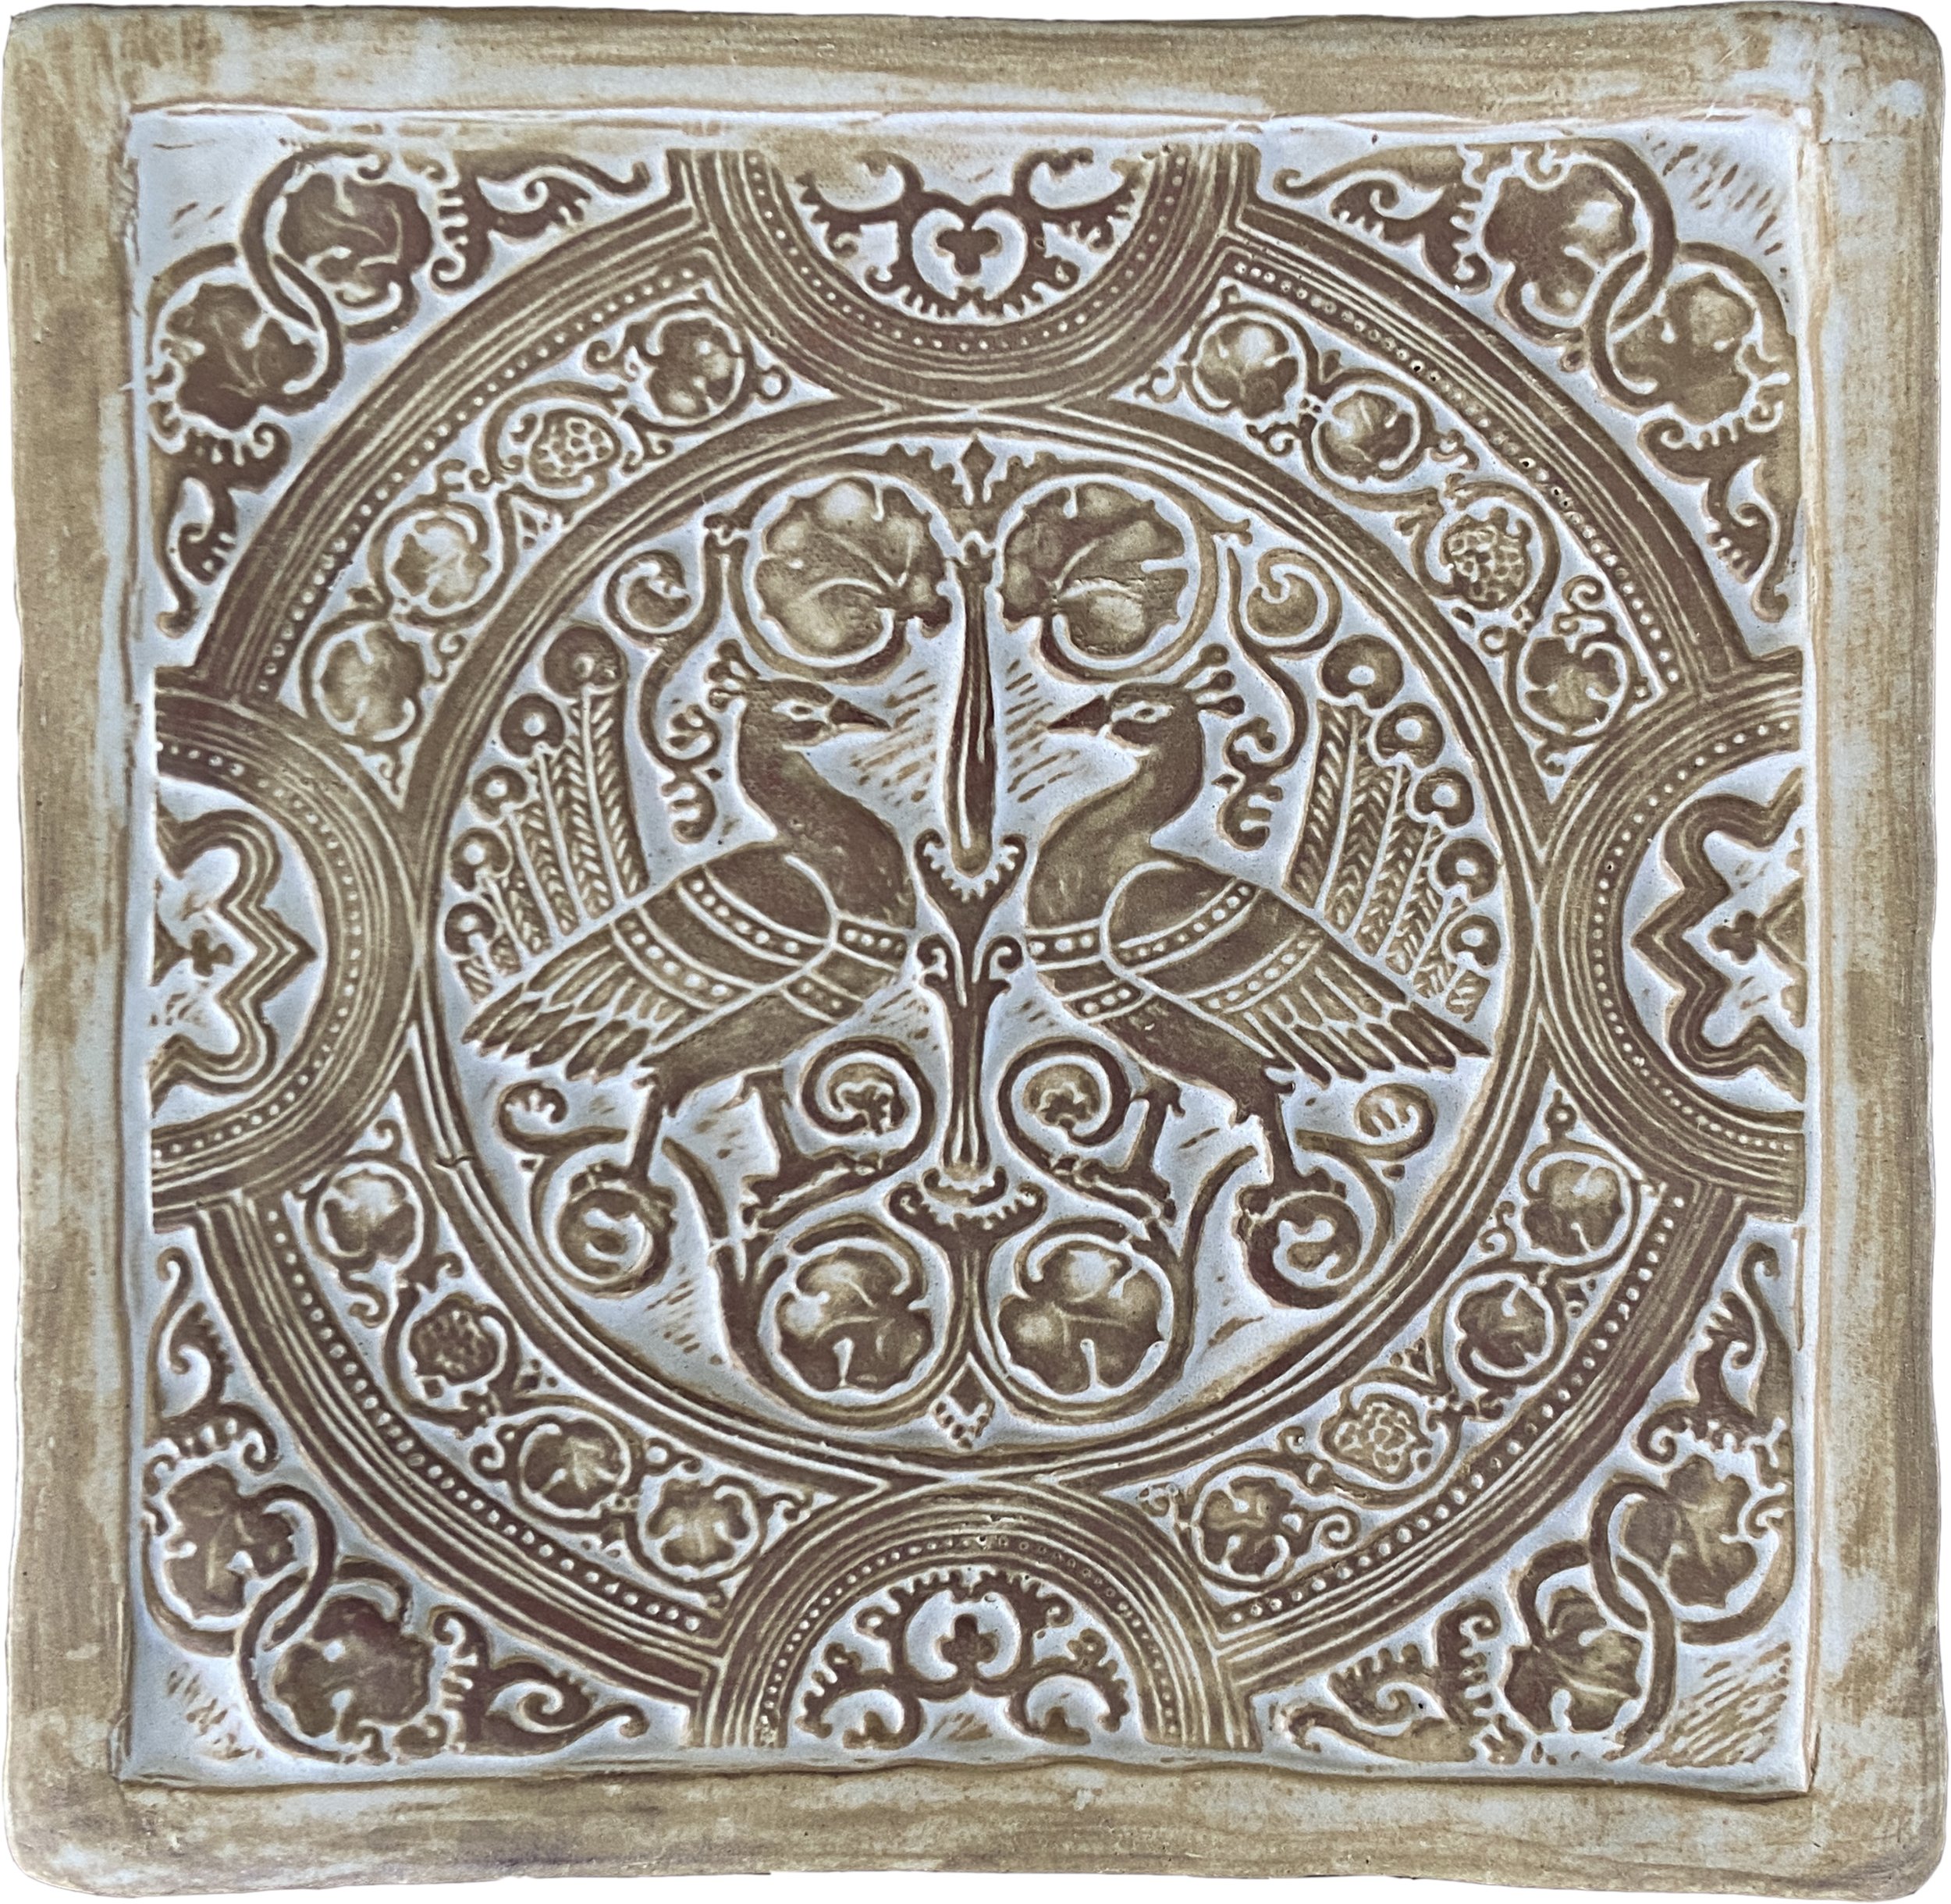 12x12 deco tiles — Pasadena Craftsman Tile